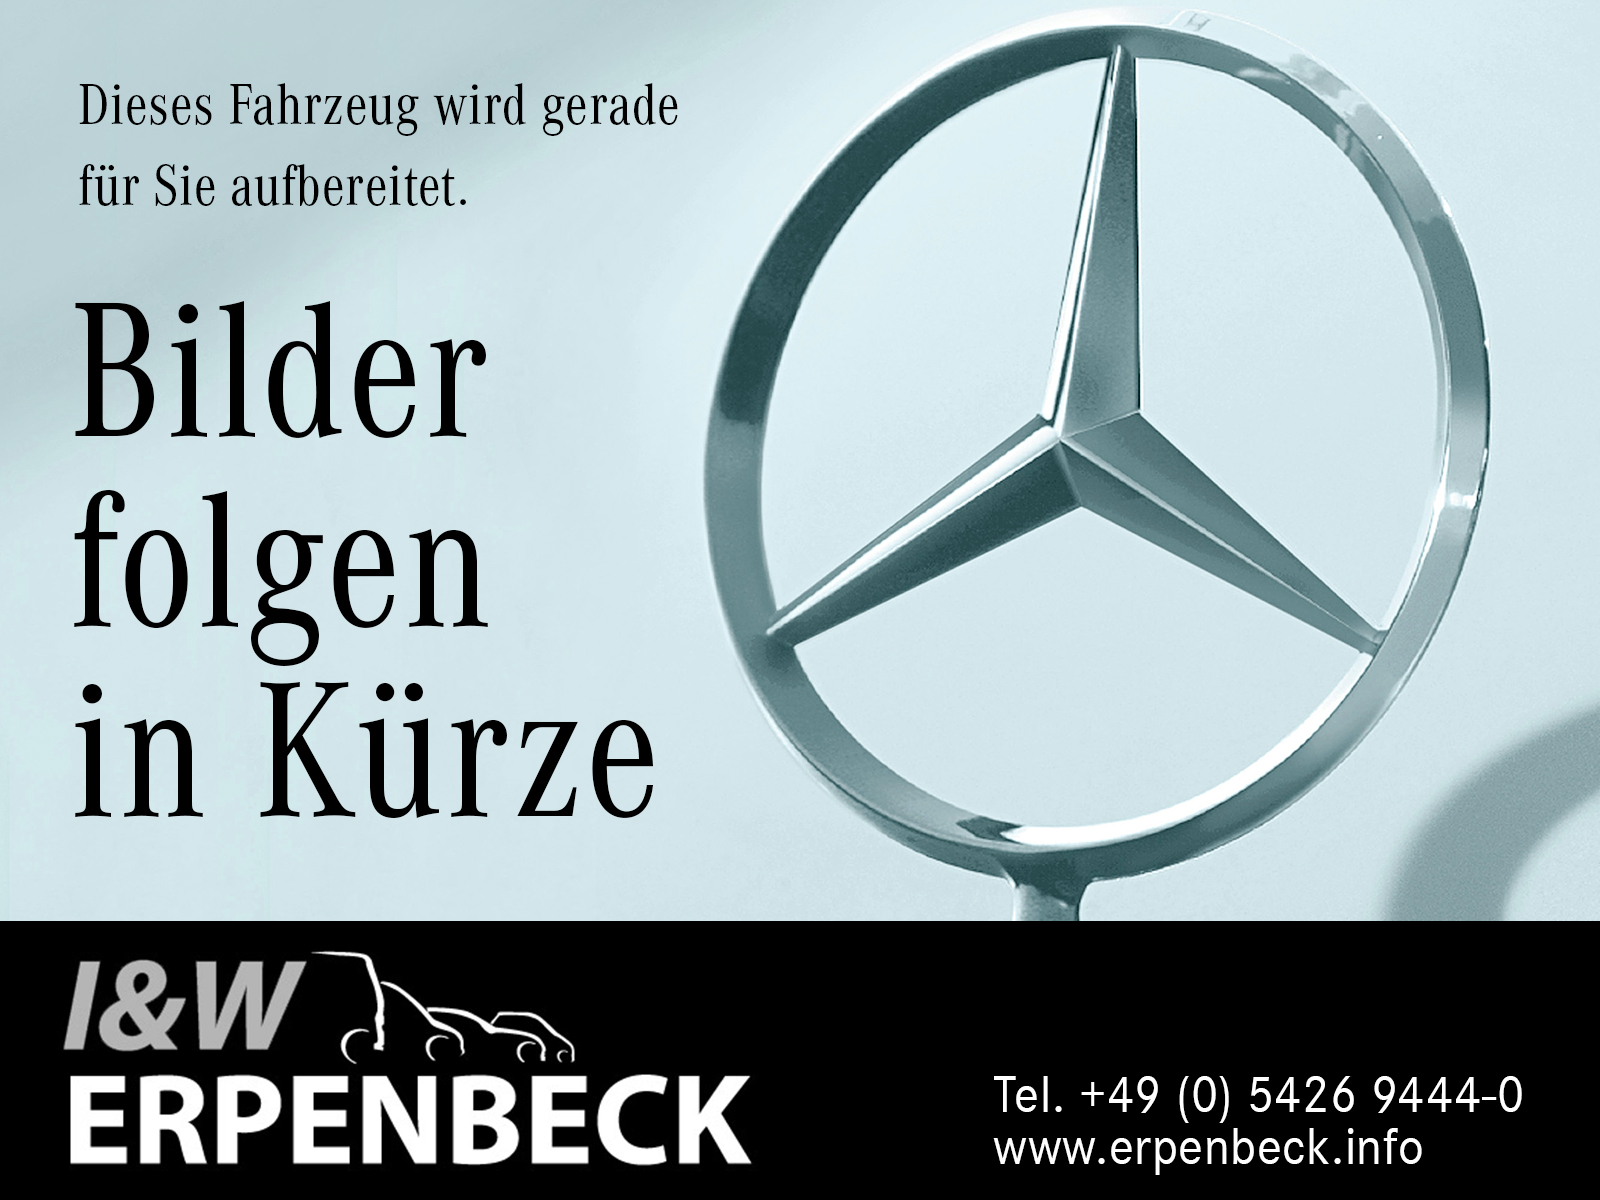 Mercedes-Benz E 200 Avantgarde